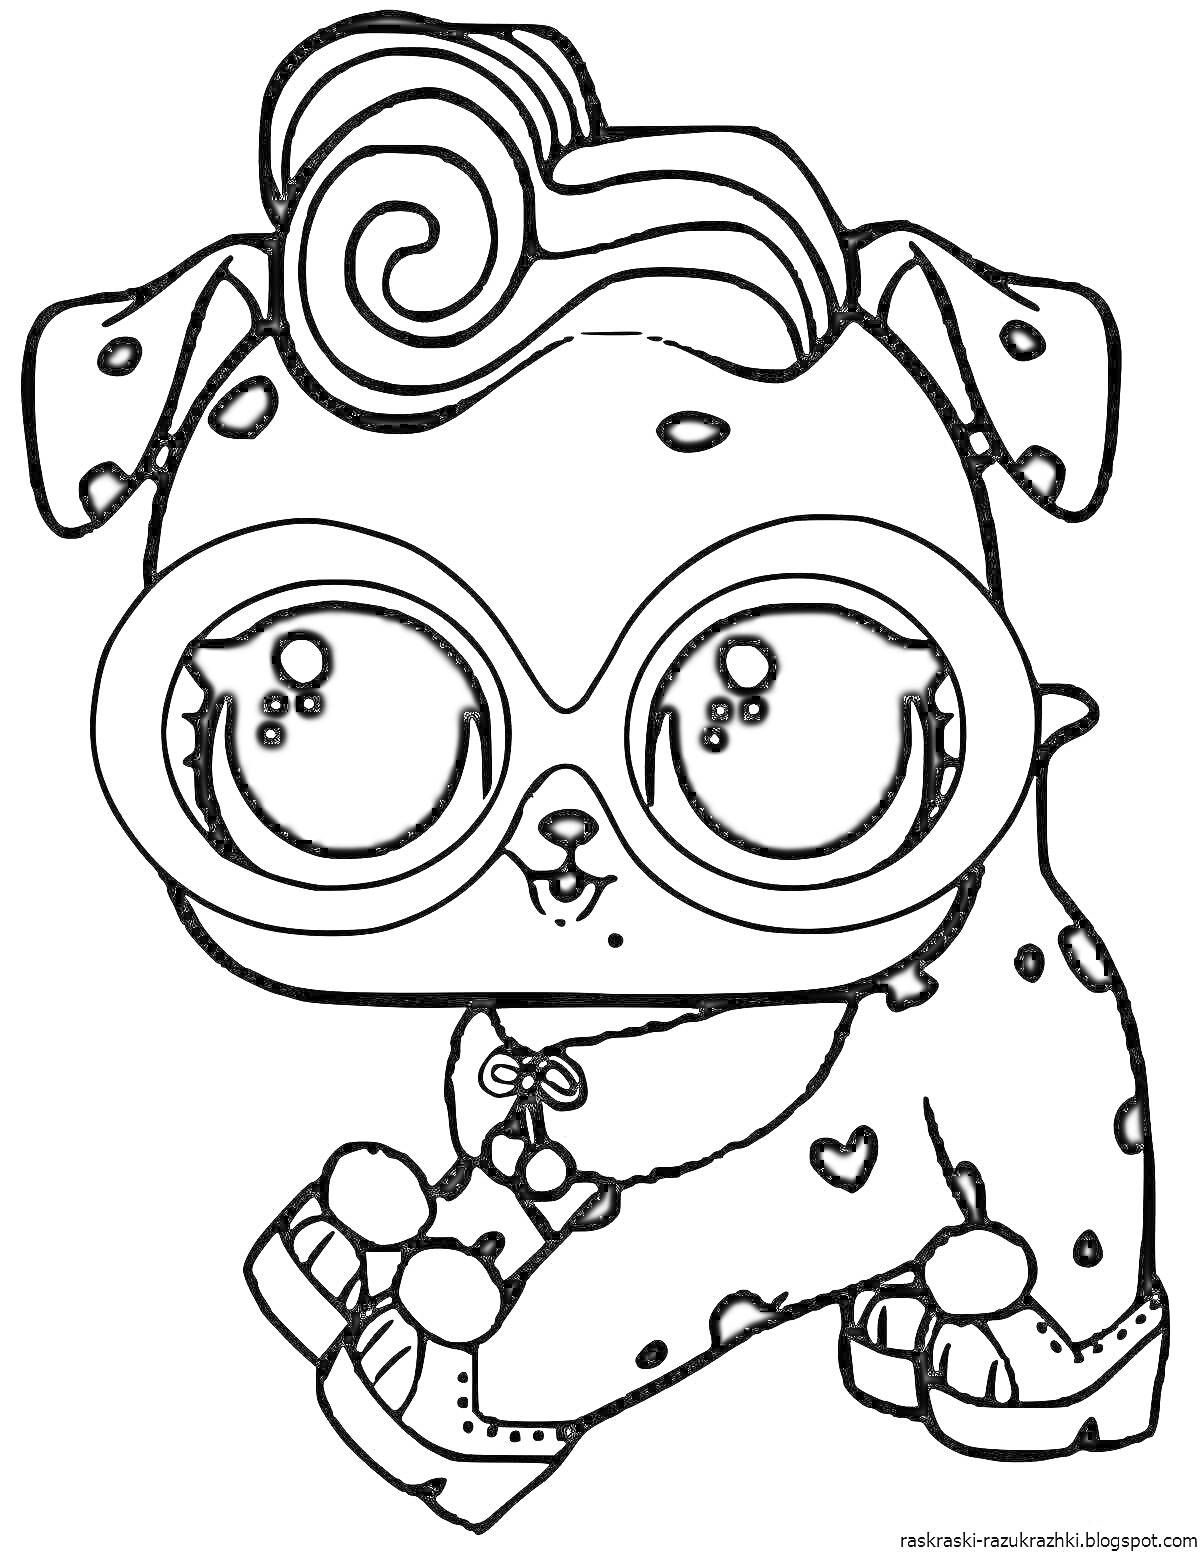 Раскраска Щенок в очках с кудрявой челкой на голове, пятнистый мех, сердце на щеке и лапах, ошейник с бантиком и пушистыми сапожками.